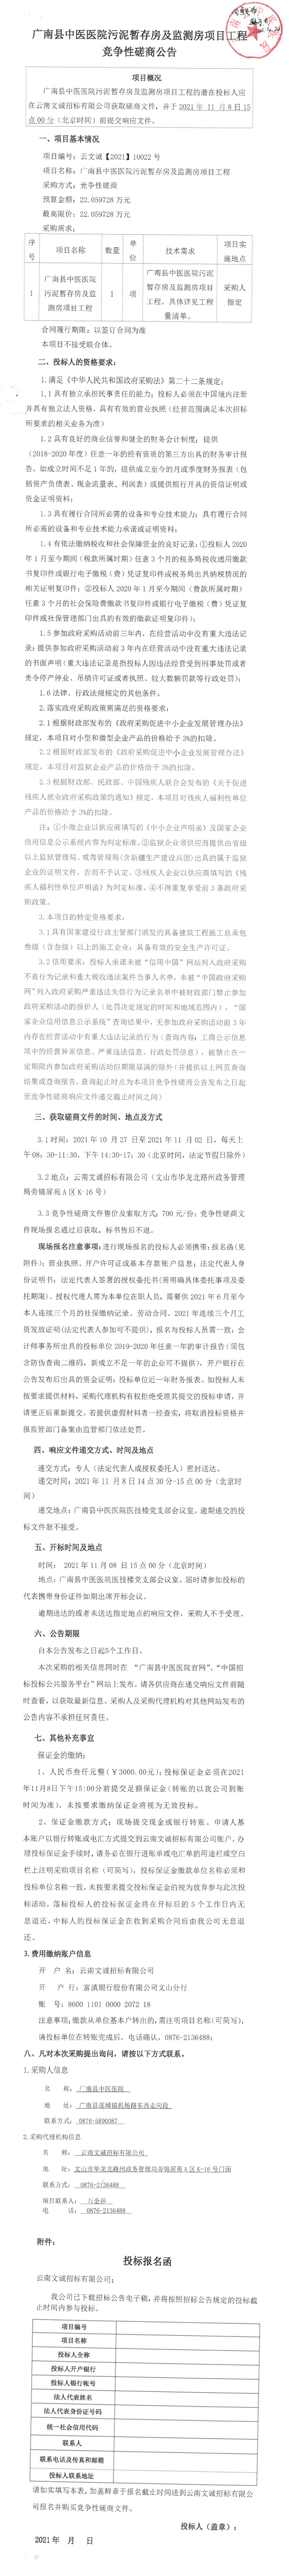 广南县中医医院污泥暂存房及监测房项目工程竞争性磋商公告(图1)